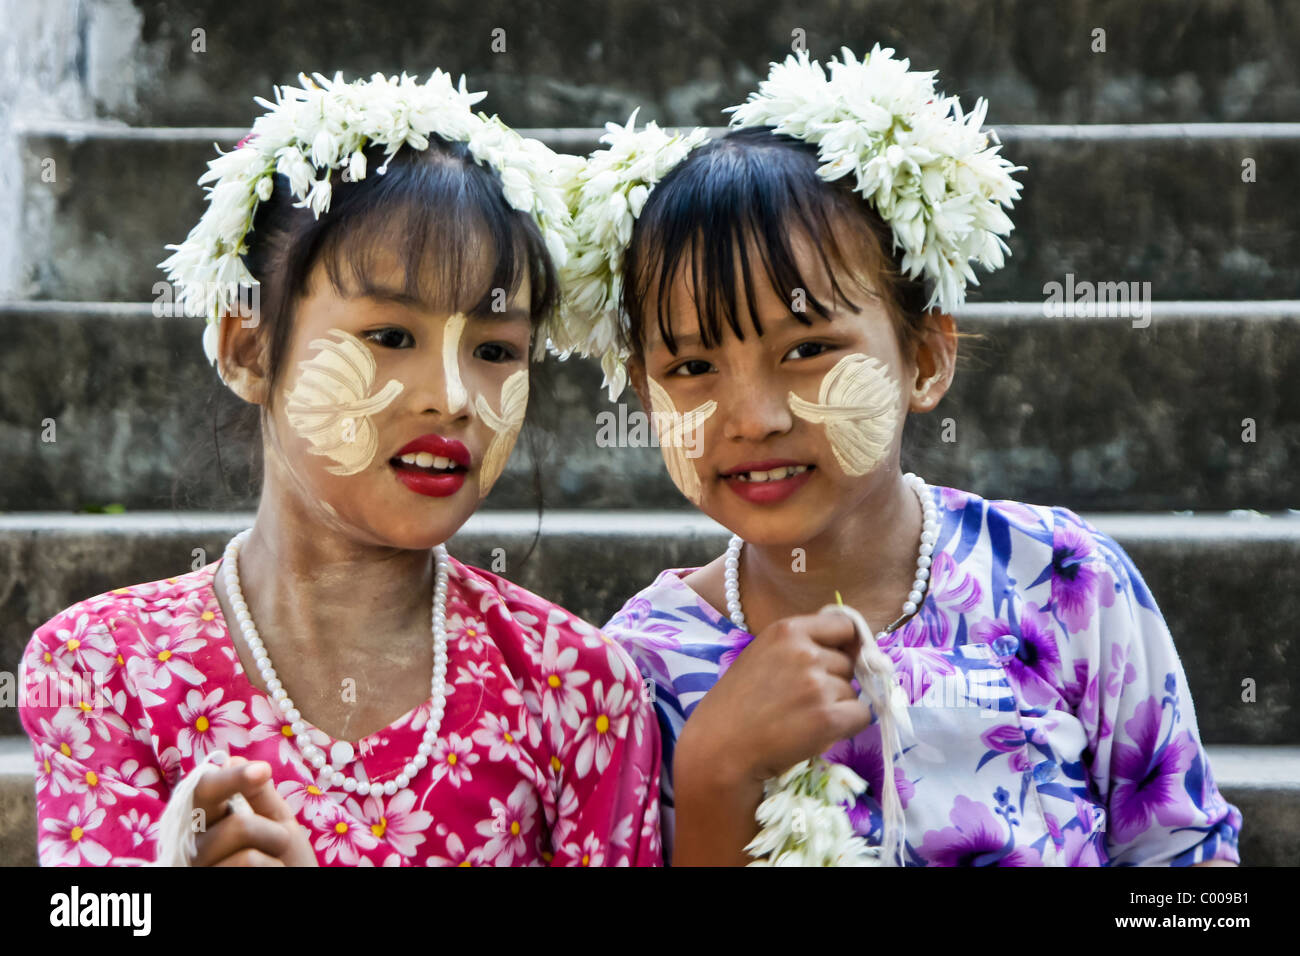 Mädchen mit Thanaka bildseitig Verkauf von Blumen, Mandalay, Myanmar (Burma) Stockfoto